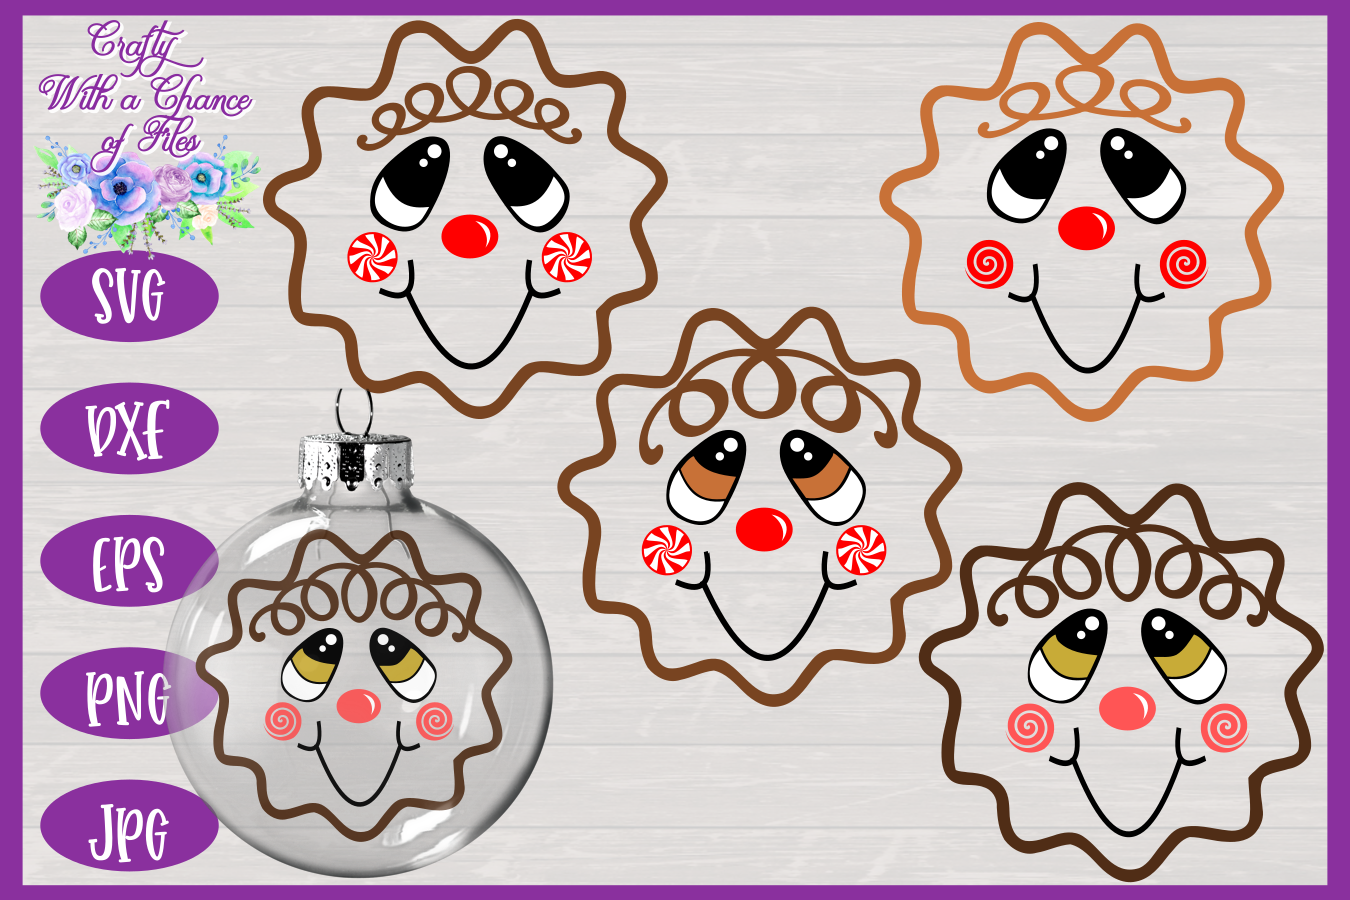 Download Gingerbread Man SVG | Christmas SVG | Ornament SVG | Decor ...